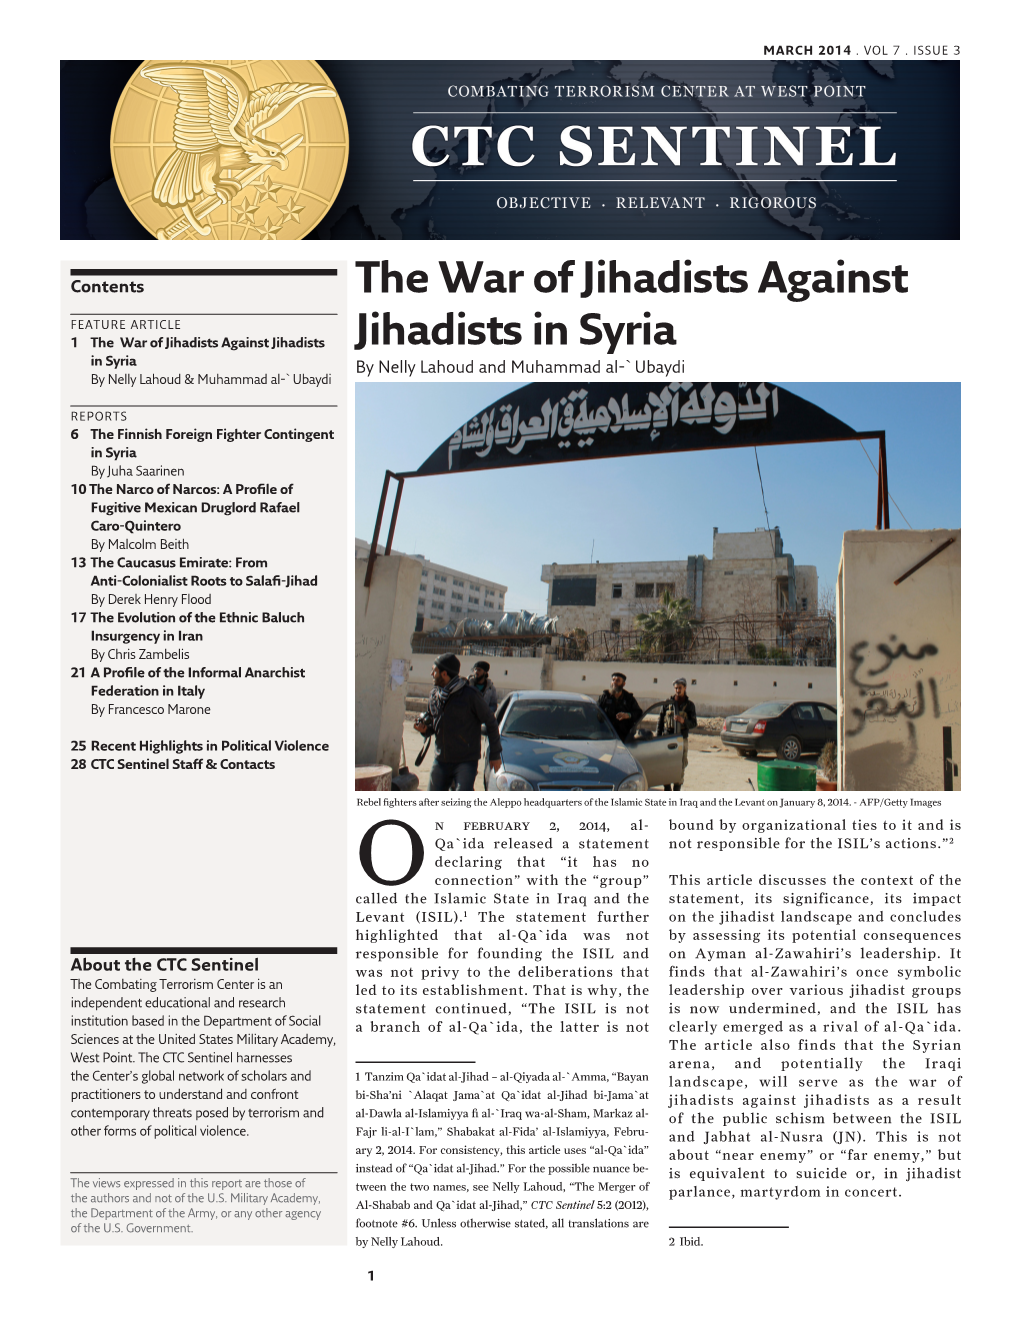 The War of Jihadists Against Jihadists in Syria